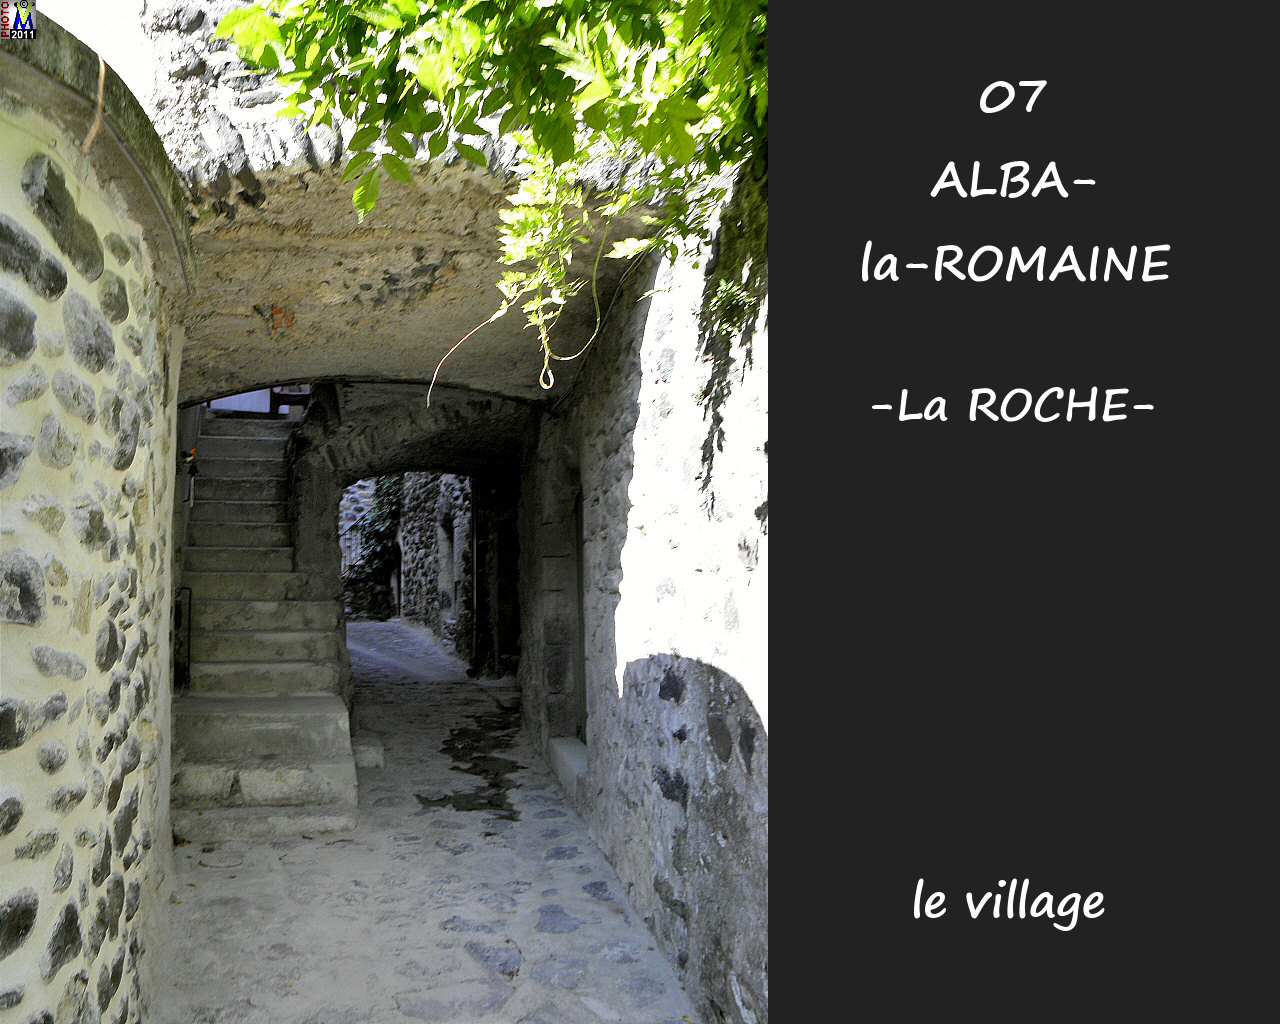 07ALBA-ROMAINEzROCHE_village_110.jpg